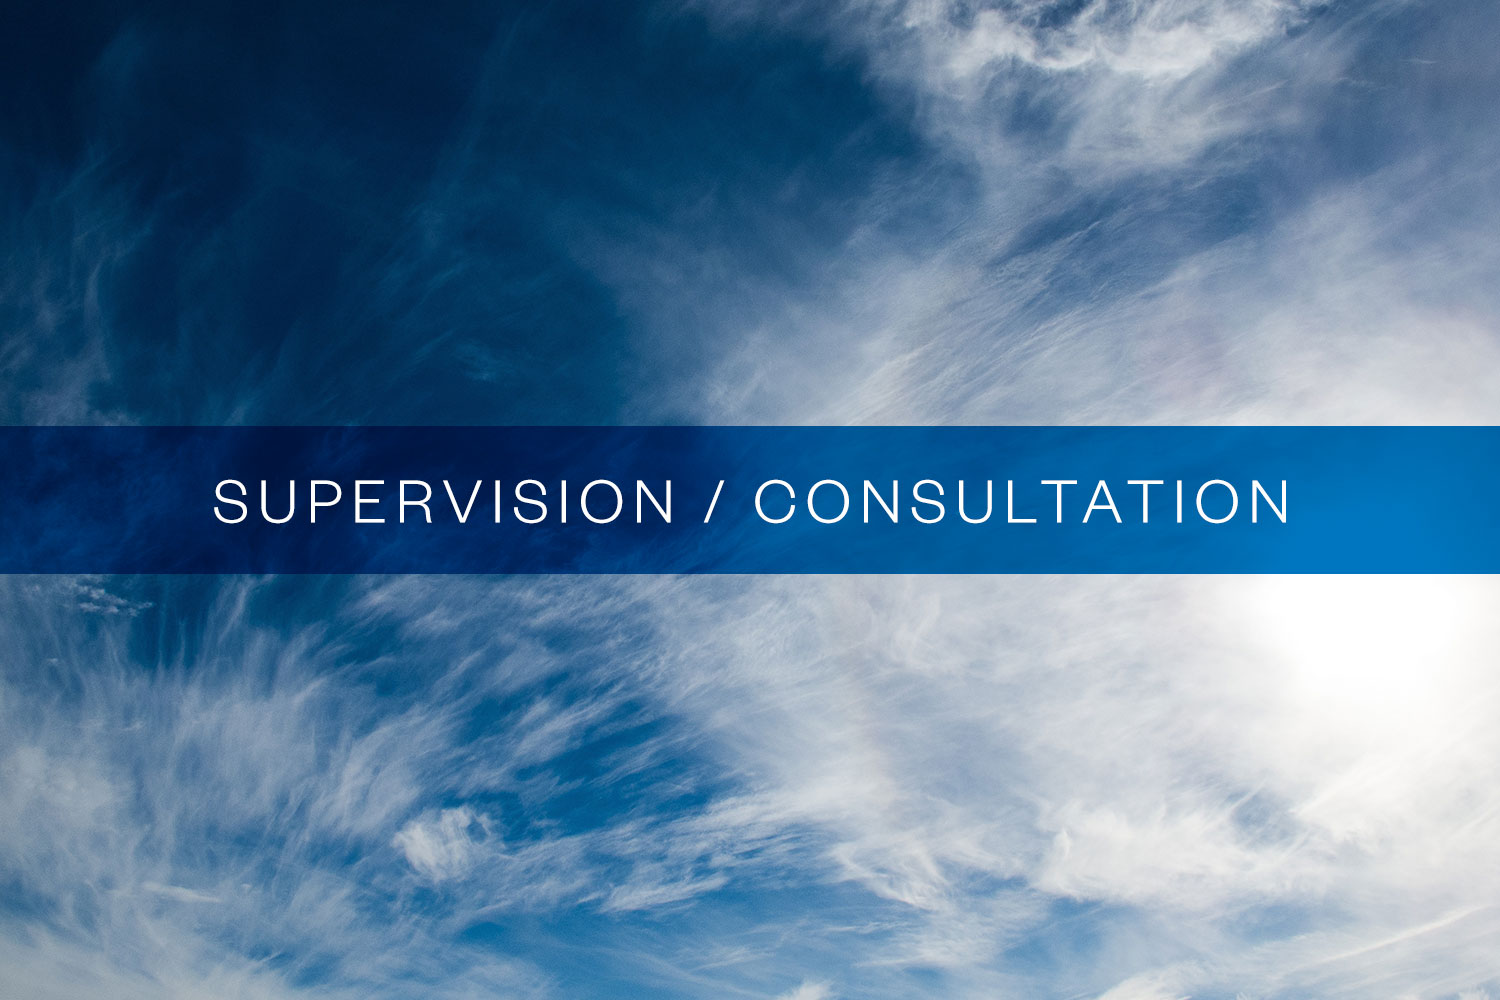 Supervision / Consultation